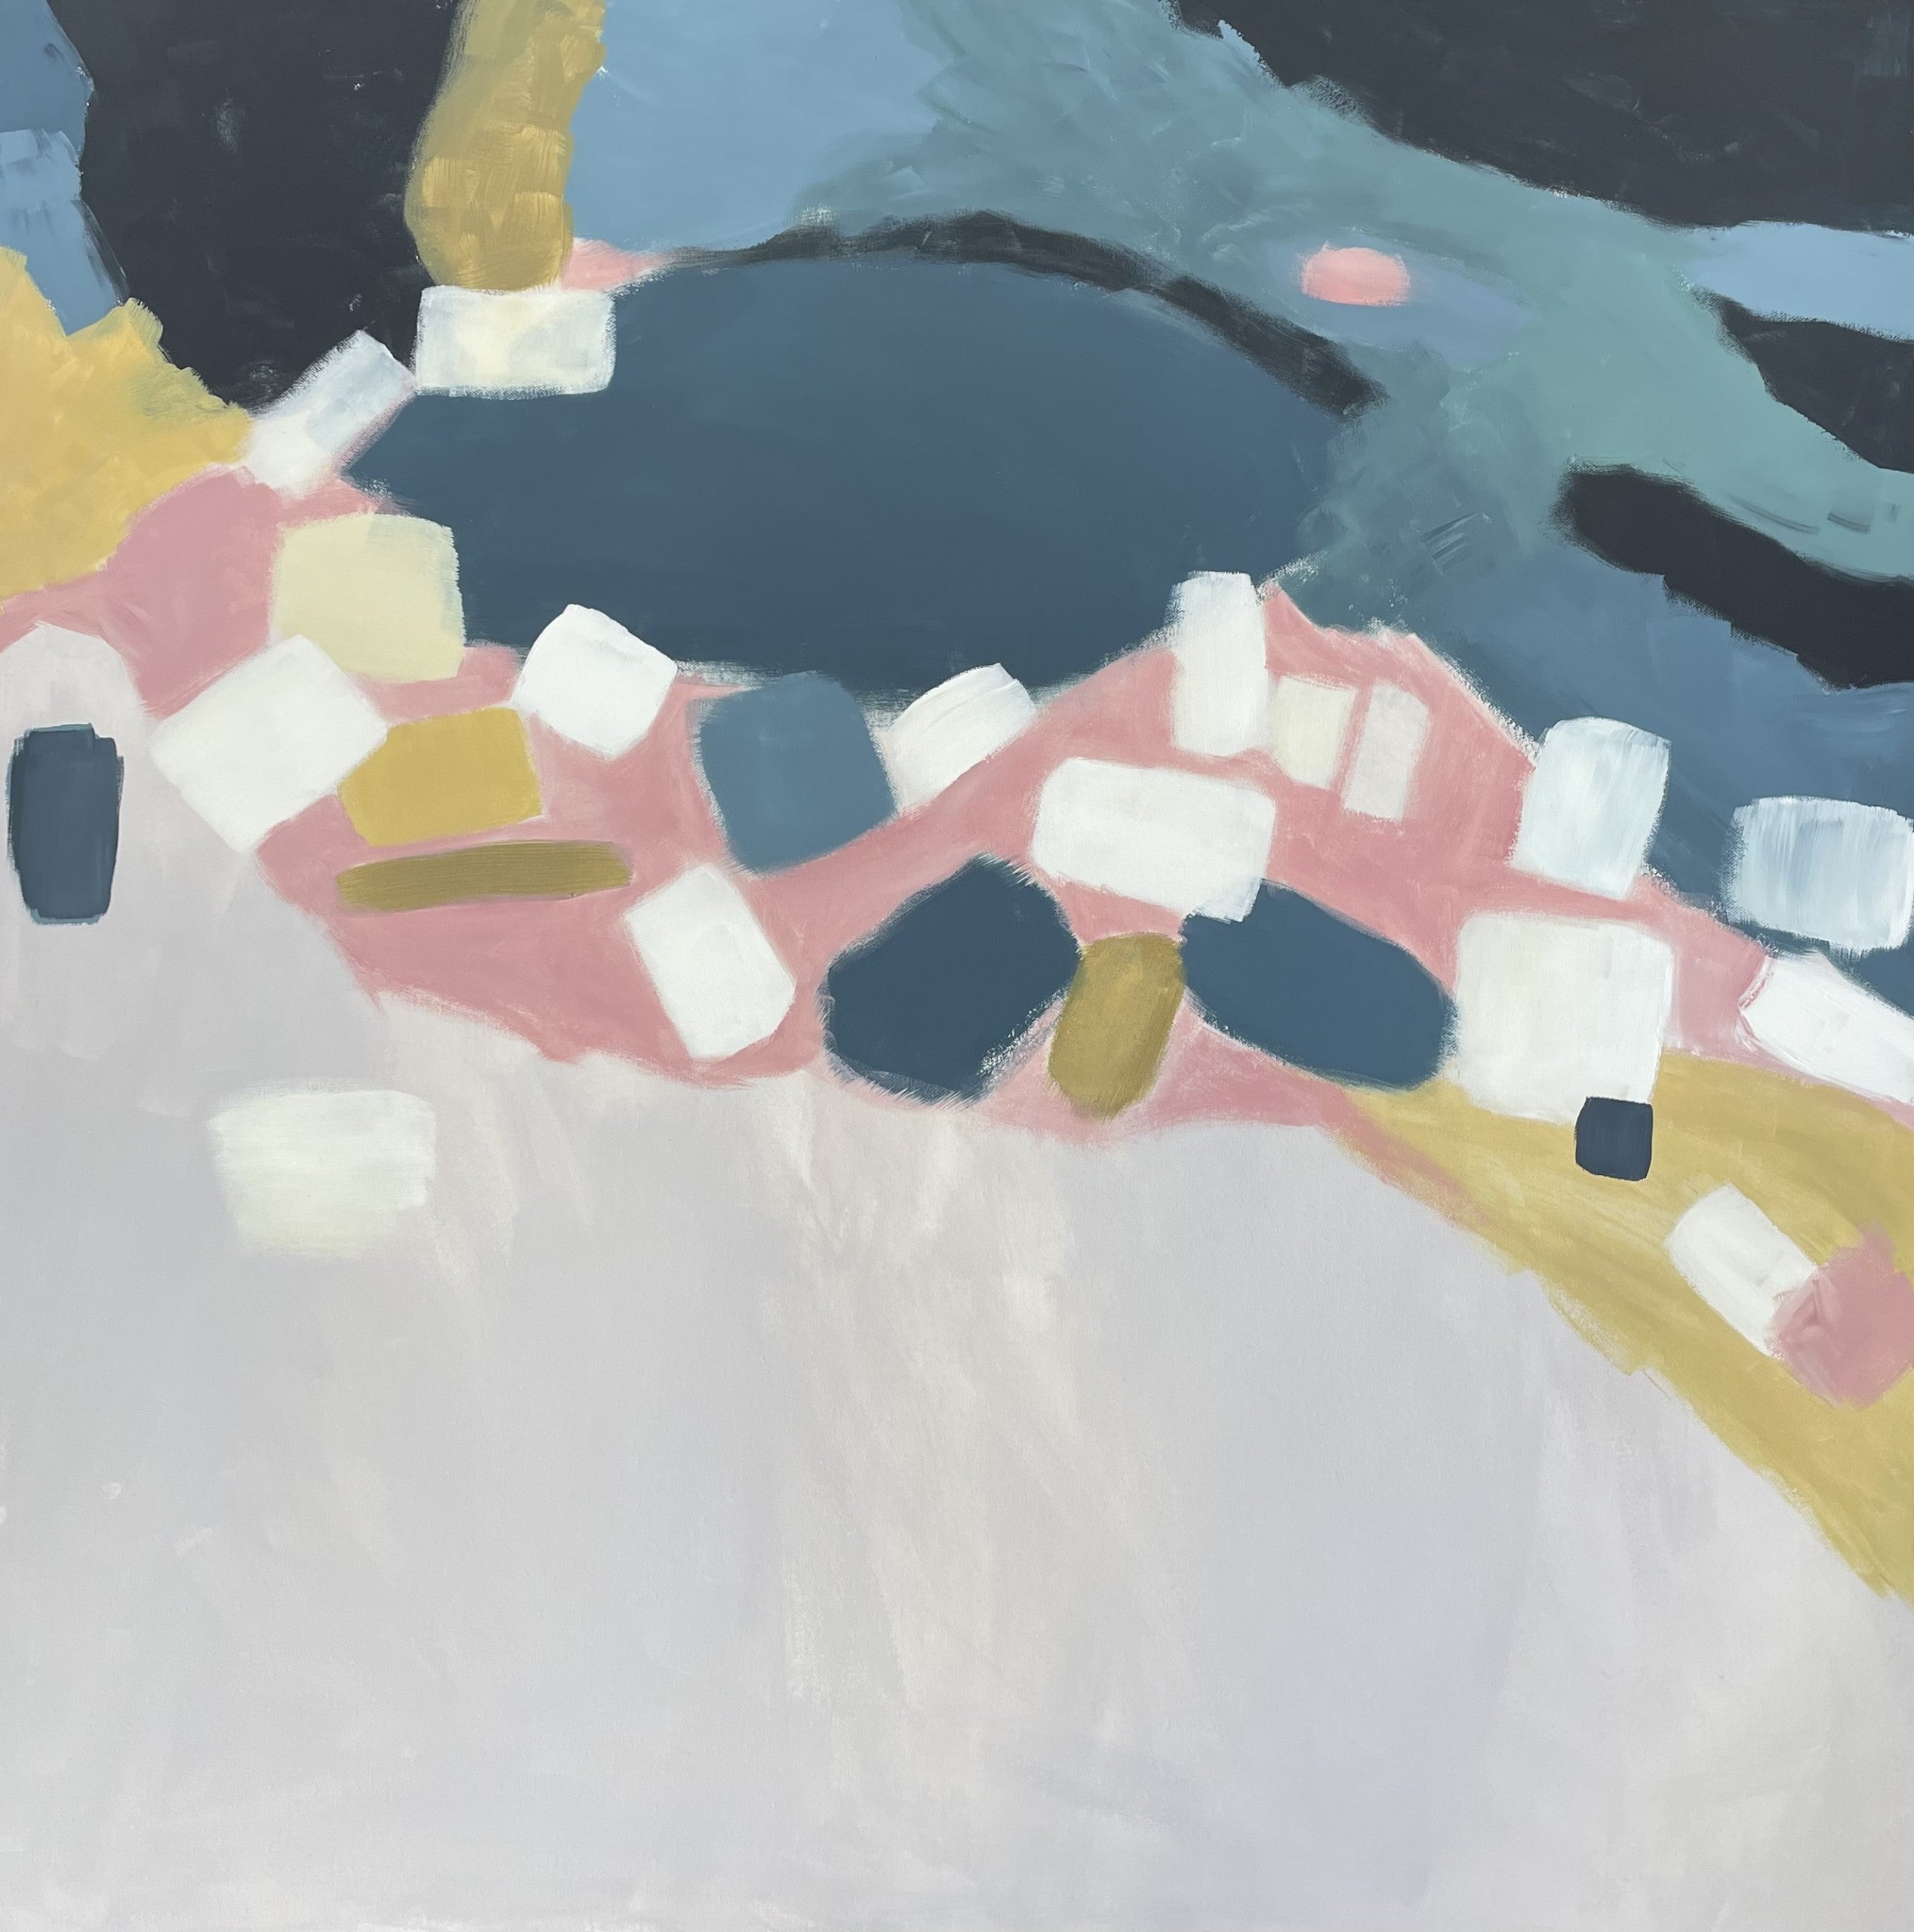 Küstenreflexionen II von Fleur Park [2022]

Coastal Reflections II ist ein abstraktes, gestisches Originalgemälde von Fleur Park, das von Künstlern wie Henri Hayden und Nicolas de Stael beeinflusst ist. Schaffung einer abstrahierten Küstenlandschaft